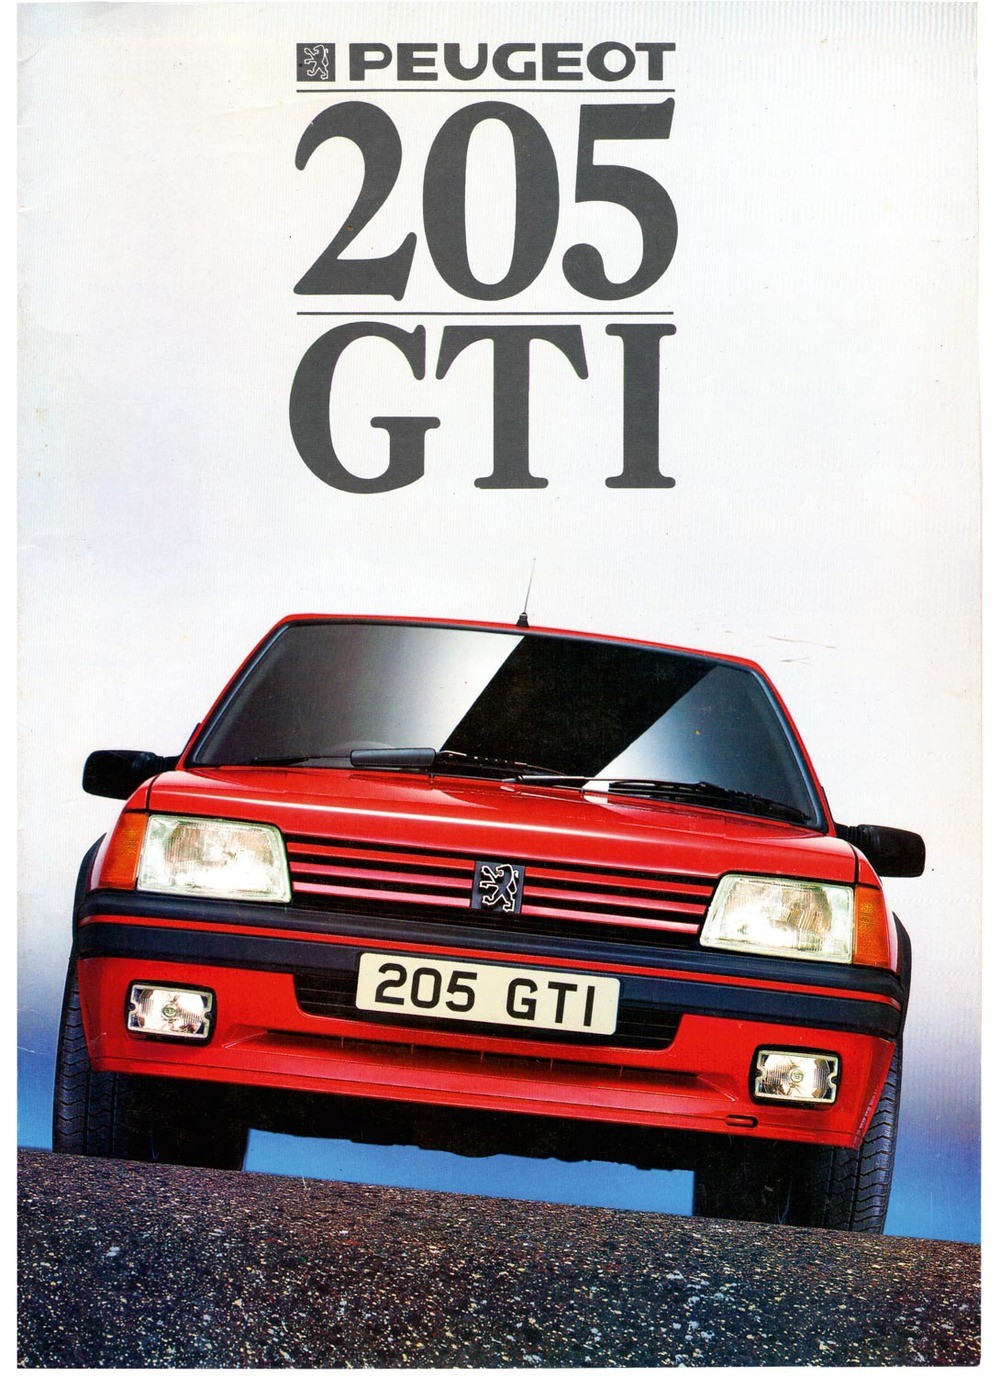 205 GTi ideas. gti, peugeot, hot hatch